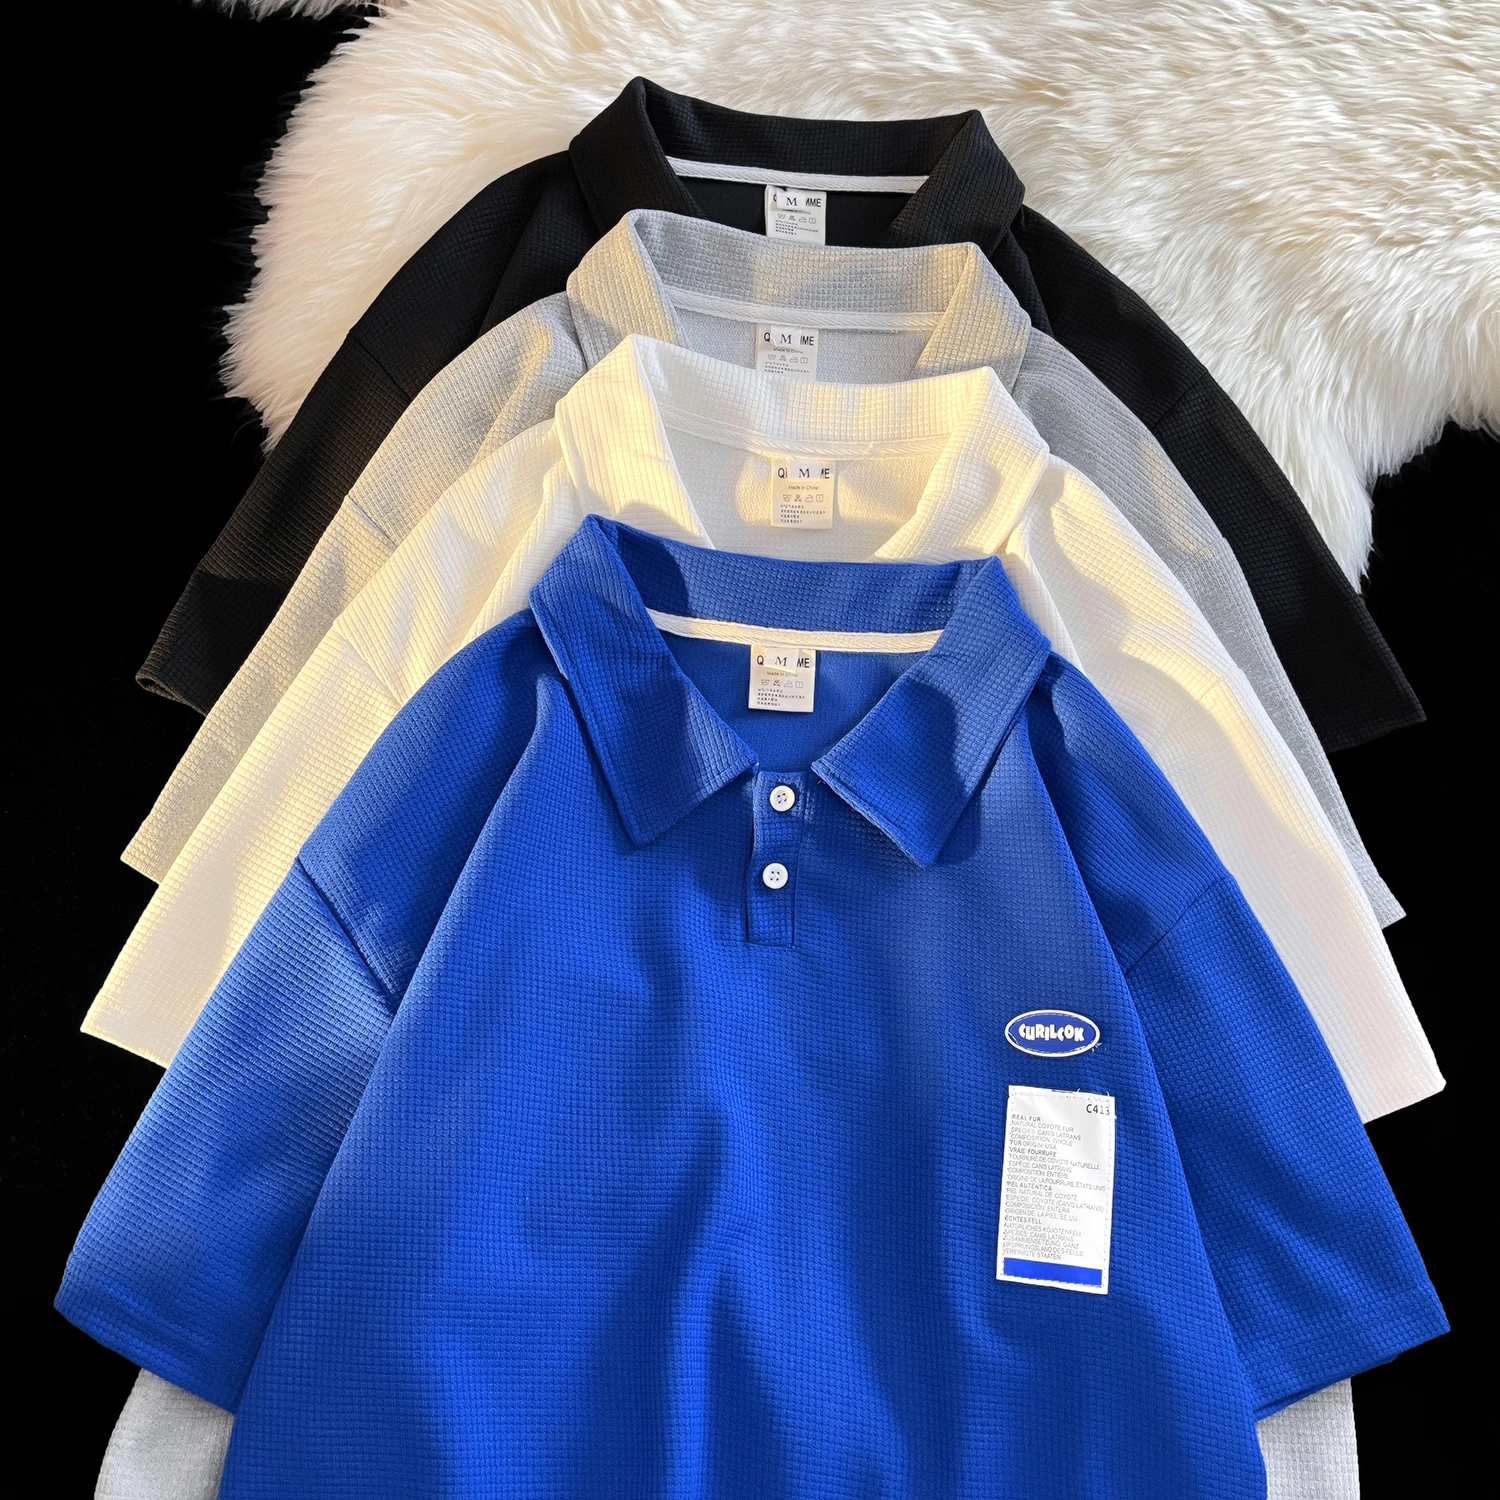 

Рубашка-поло Ins Trend Klein Мужская с короткими рукавами, Однотонная синяя рубашка-поло с вафельным принтом, с лацканами и короткими рукавами, лет...